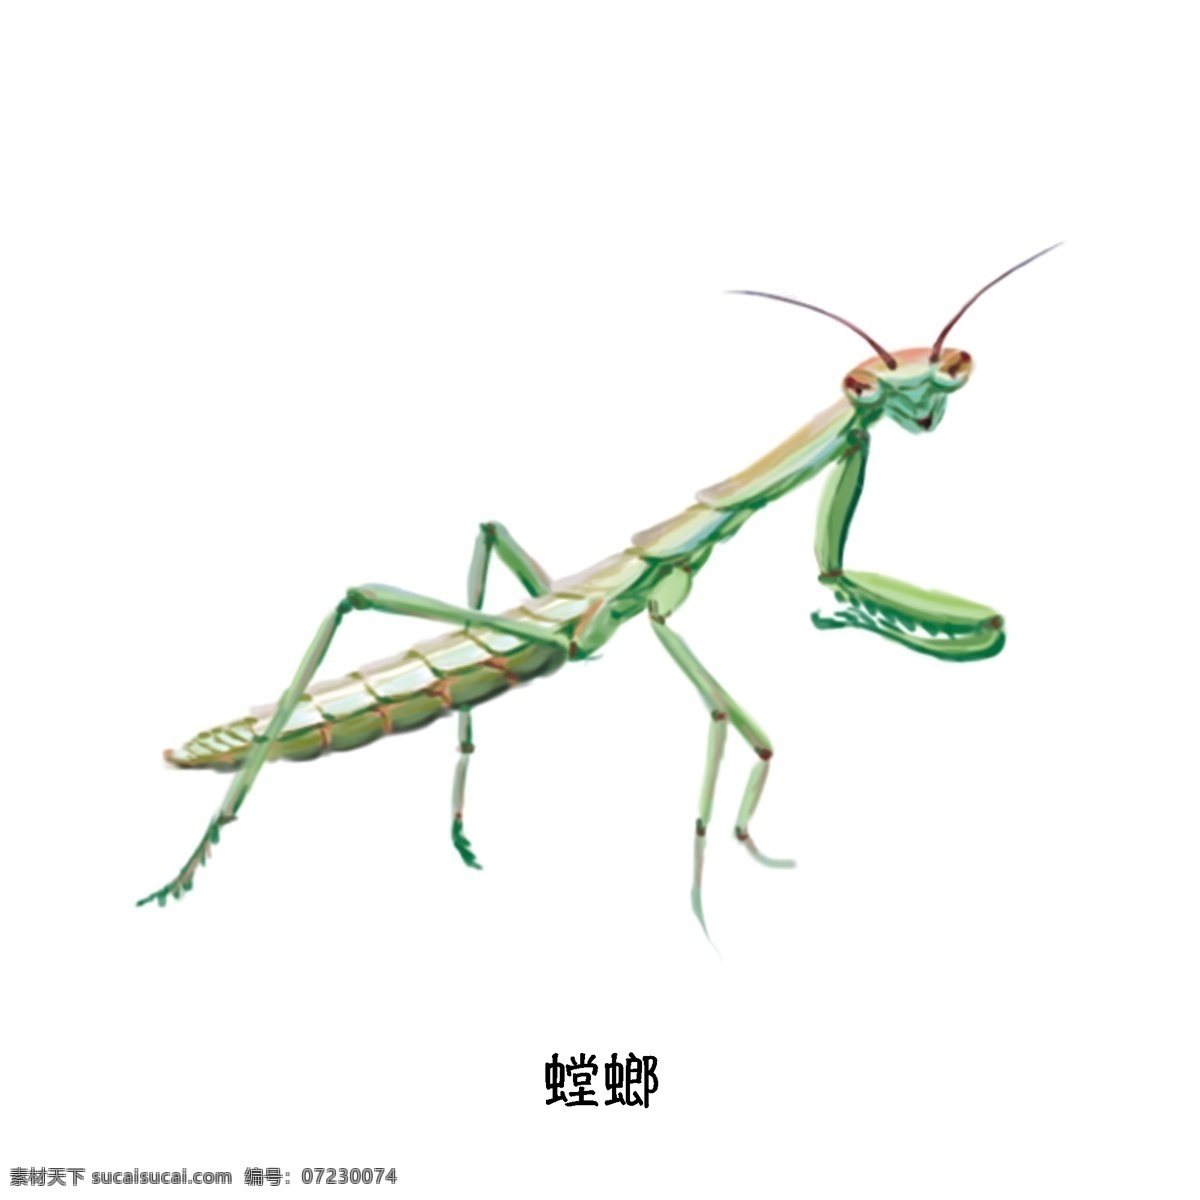 螳螂 夏季 草丛 飞行 昆虫 写实 单体 特写 科普 插图 高清 动物 飞行昆虫 单体特写 绿色昆虫 逼真 手绘